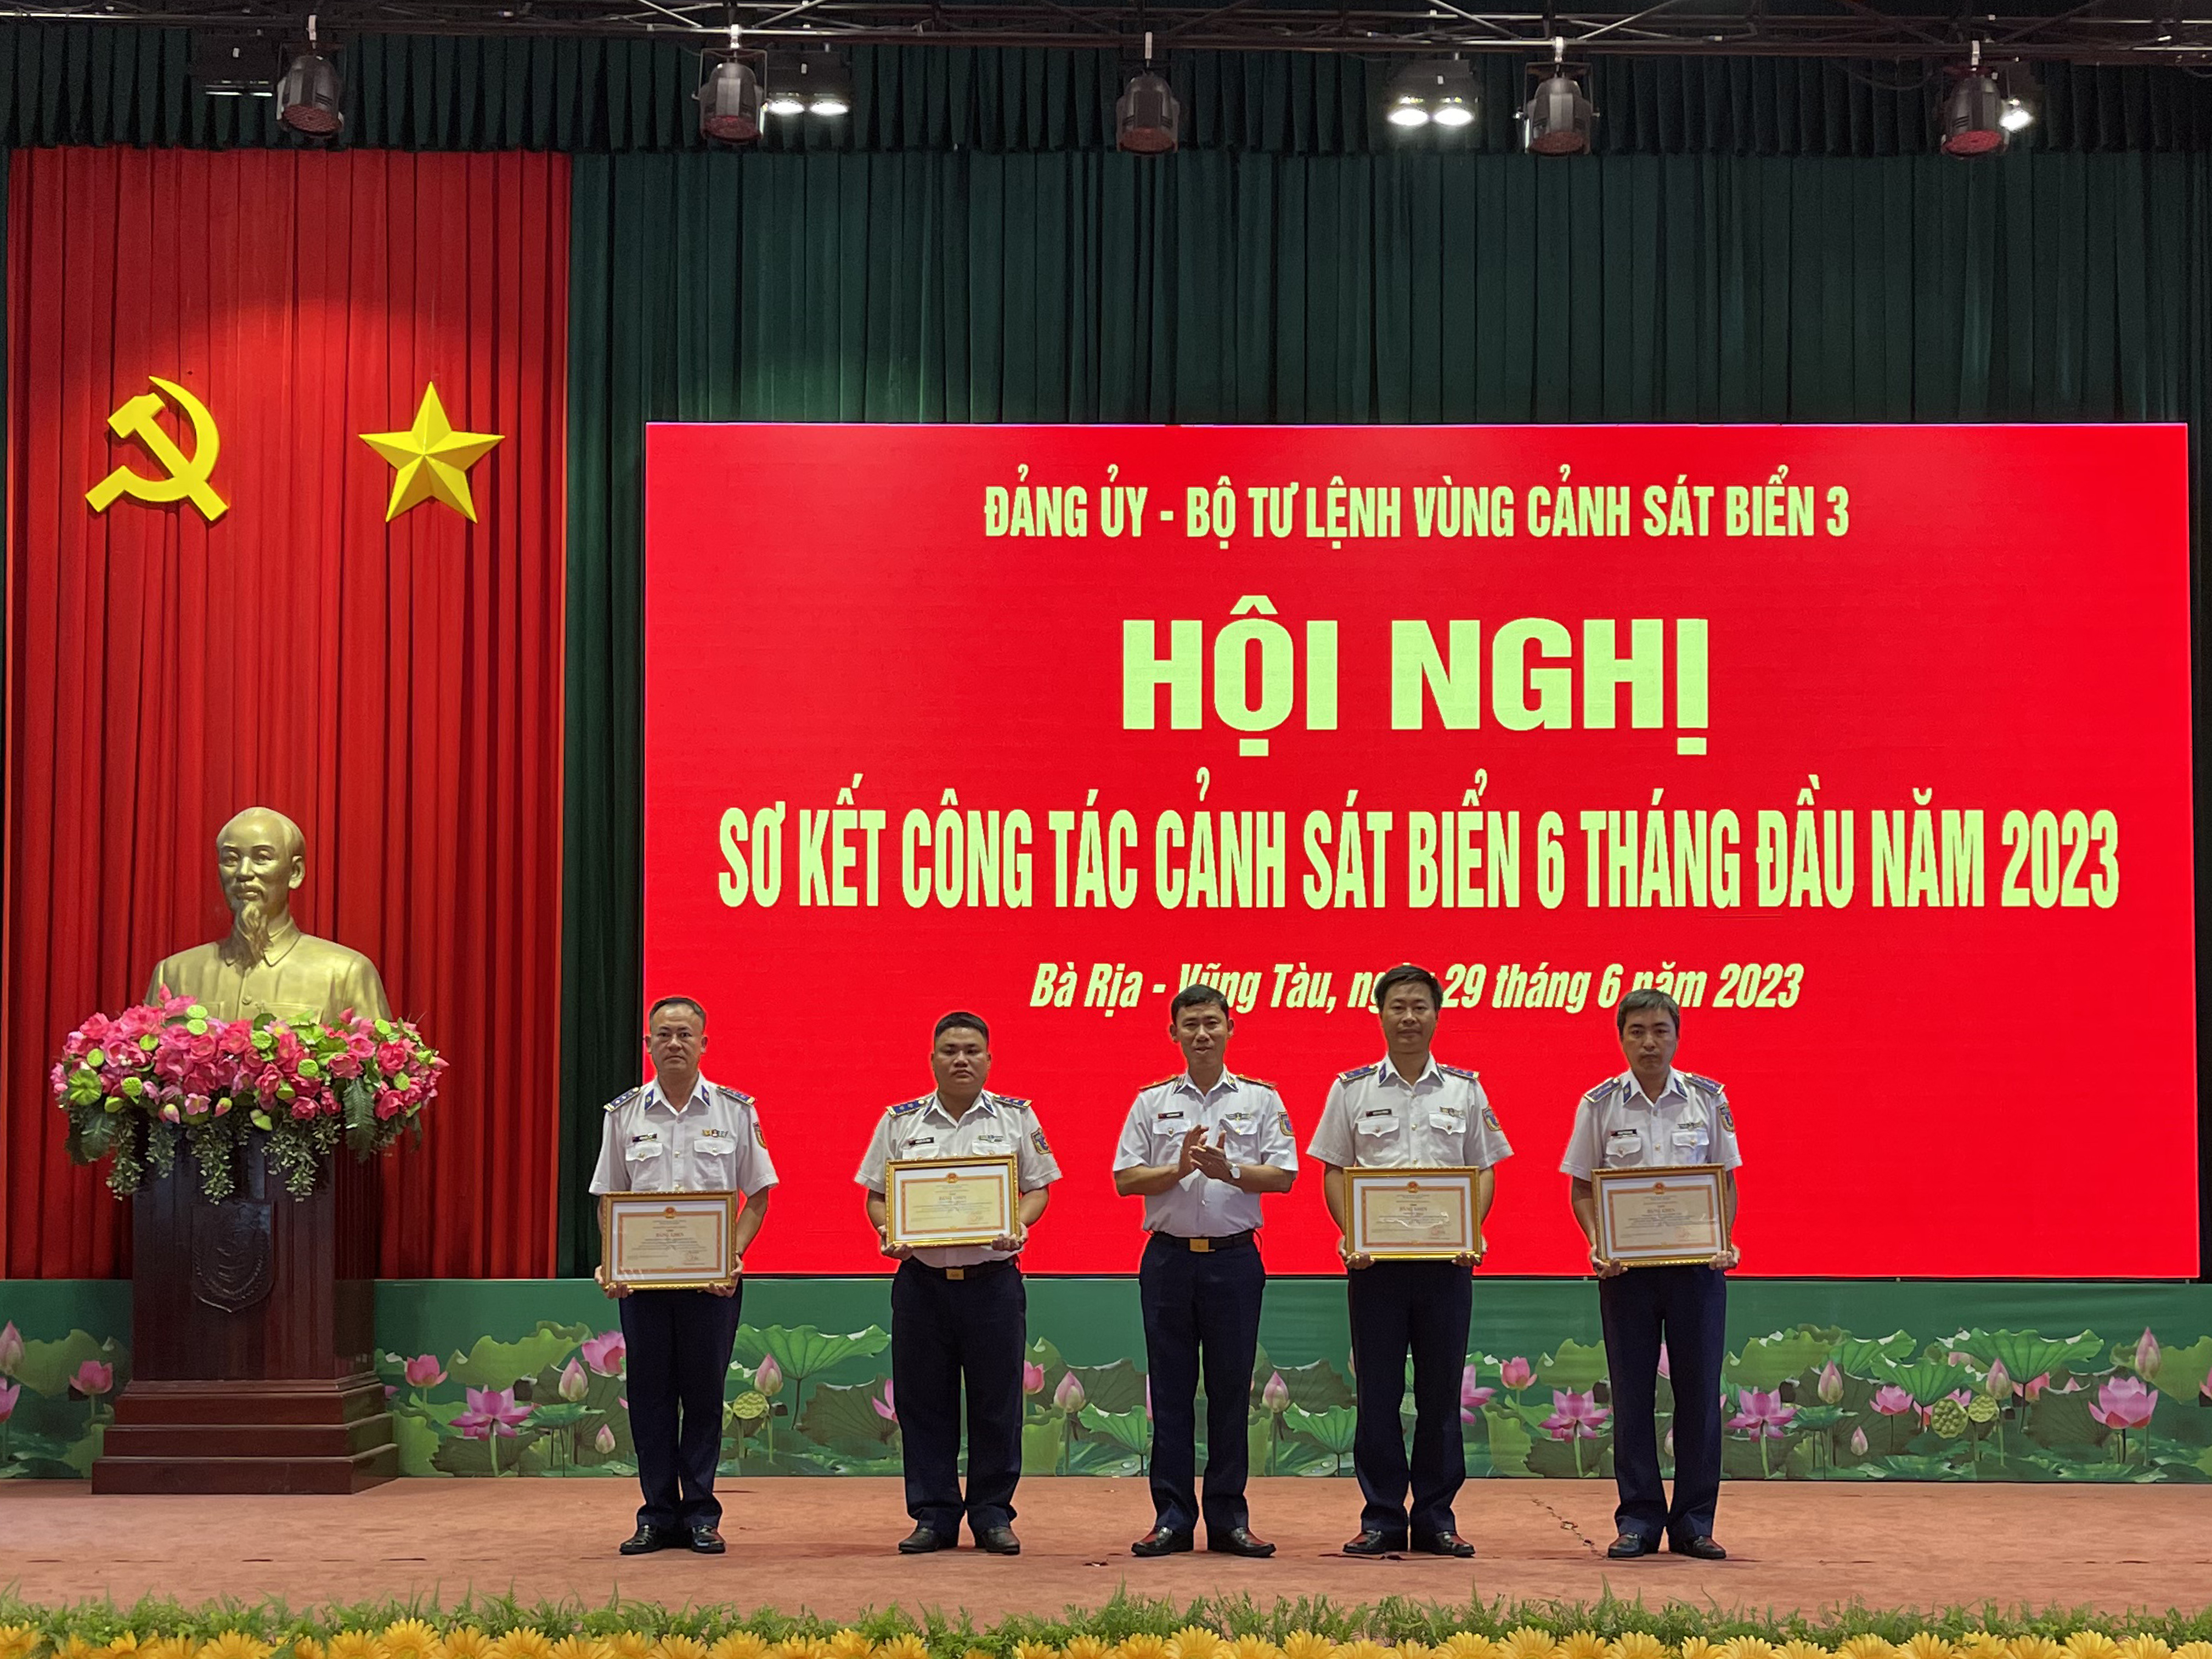 Thiếu tướng Ngô Bình Minh, Tư lệnh Vùng CSB 3 trao Bằng Khen cho các tập thể có thành tích xuất sắc trong thực hiện các nhiệm được giao.